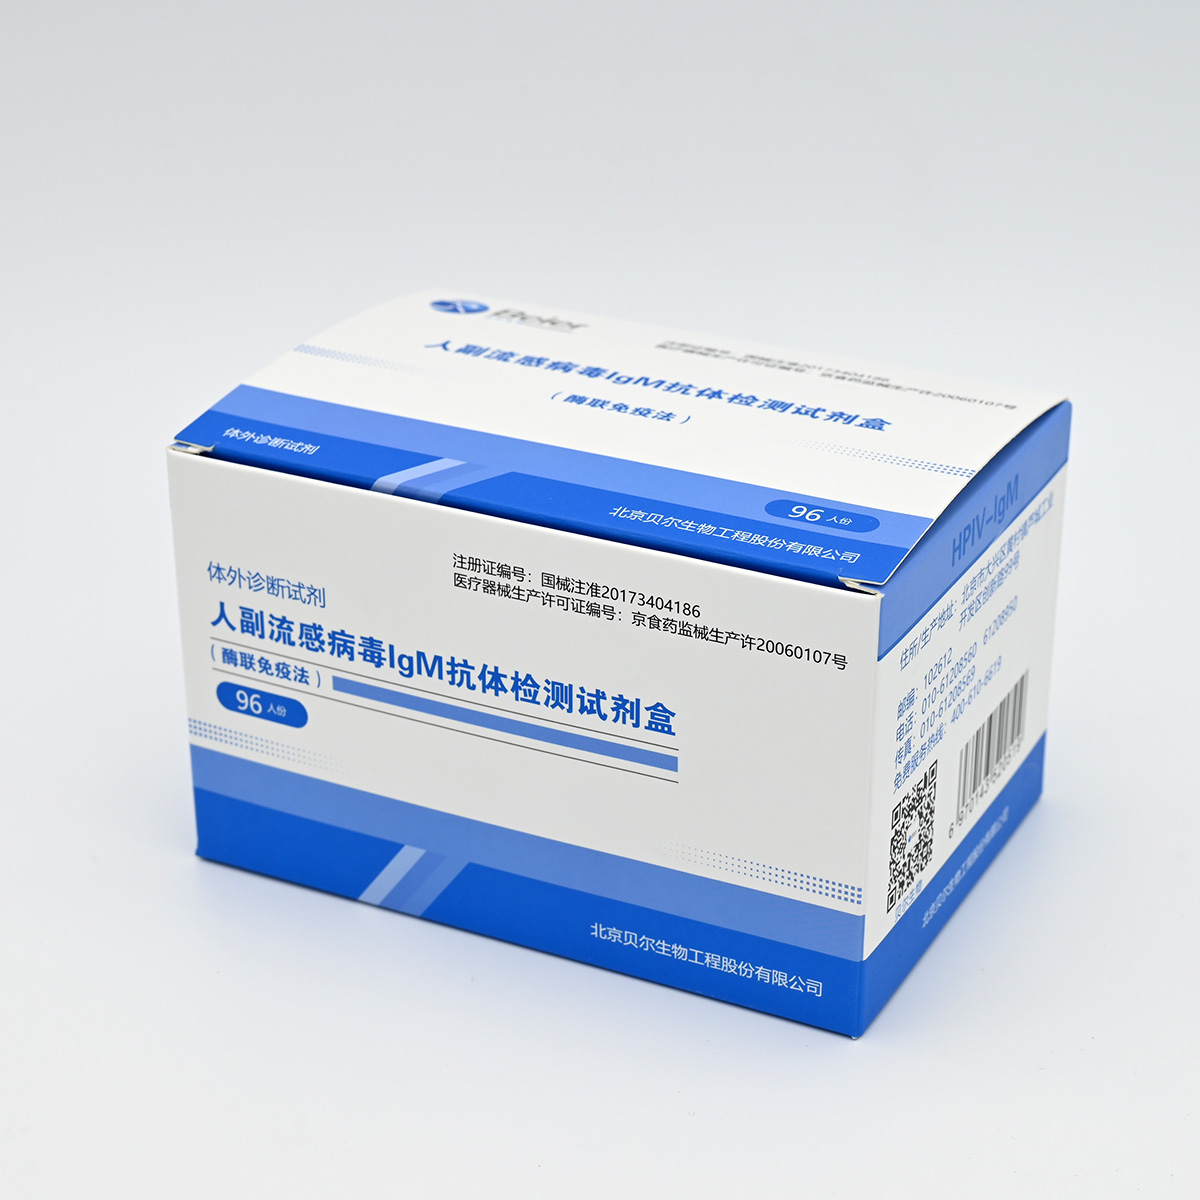 【贝尔】人副流感病毒IgM抗体检测试剂盒(酶联免疫法)